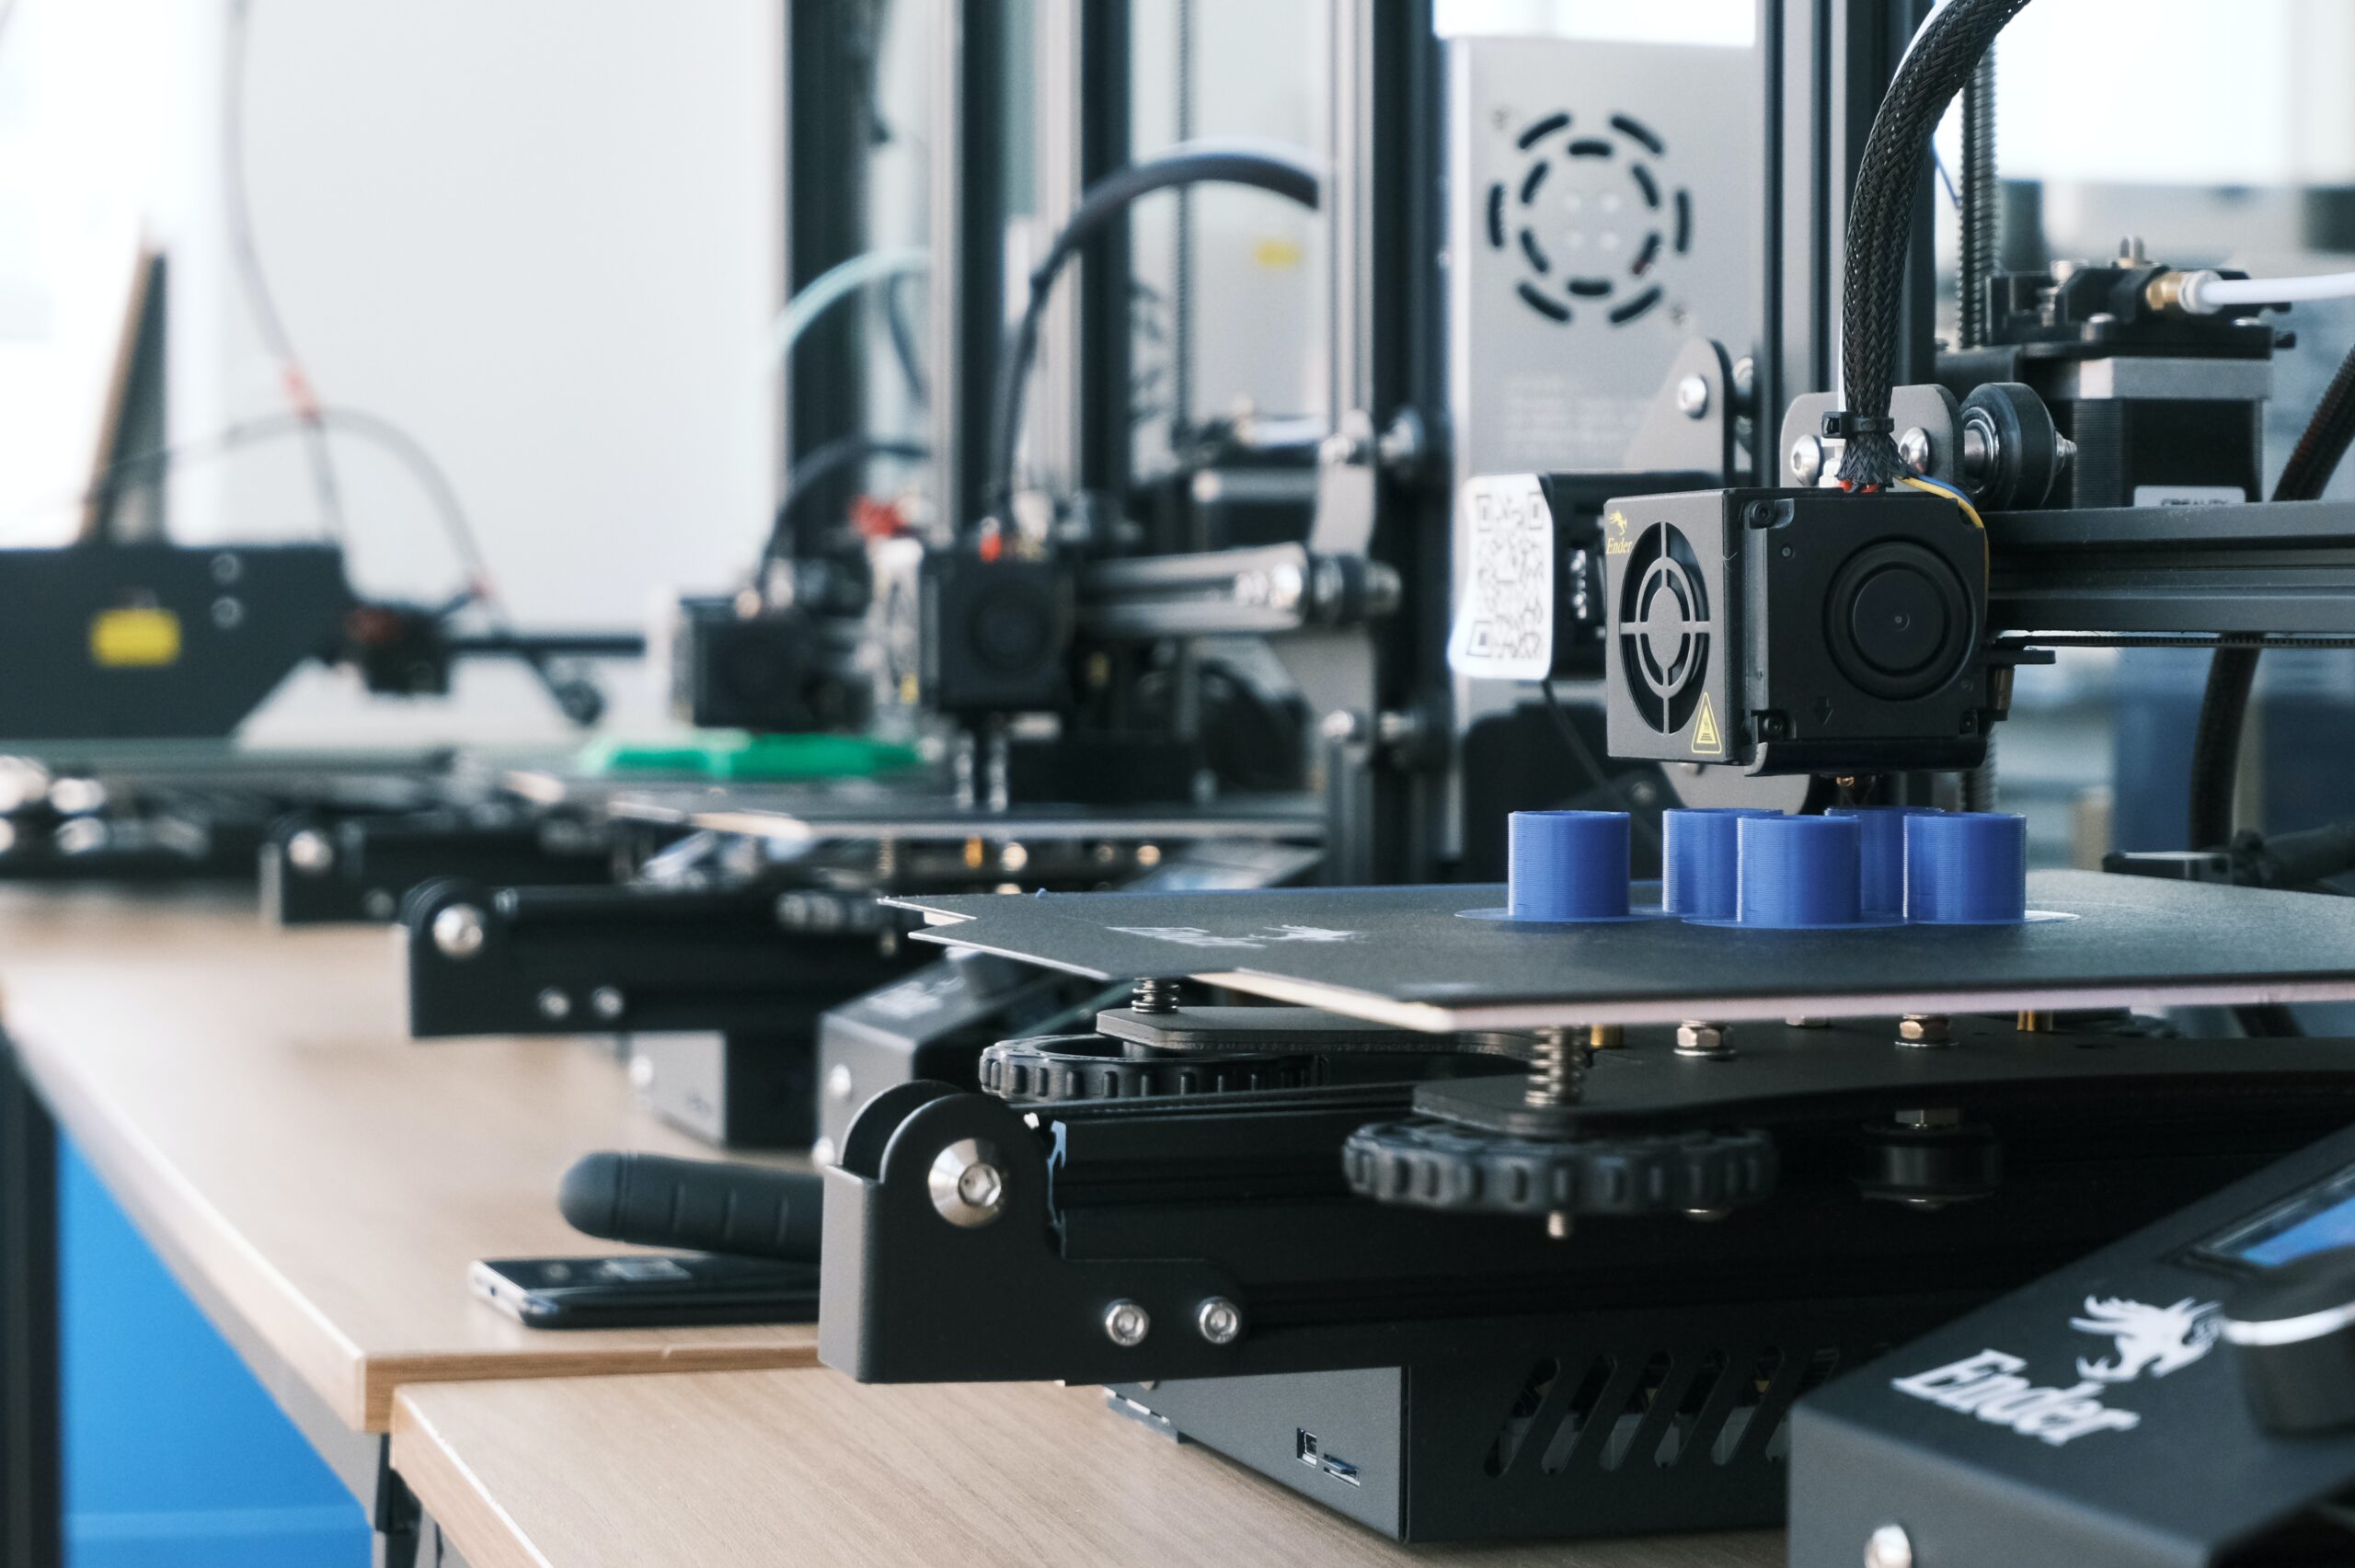 Visuel d'imprimantes 3D au travail